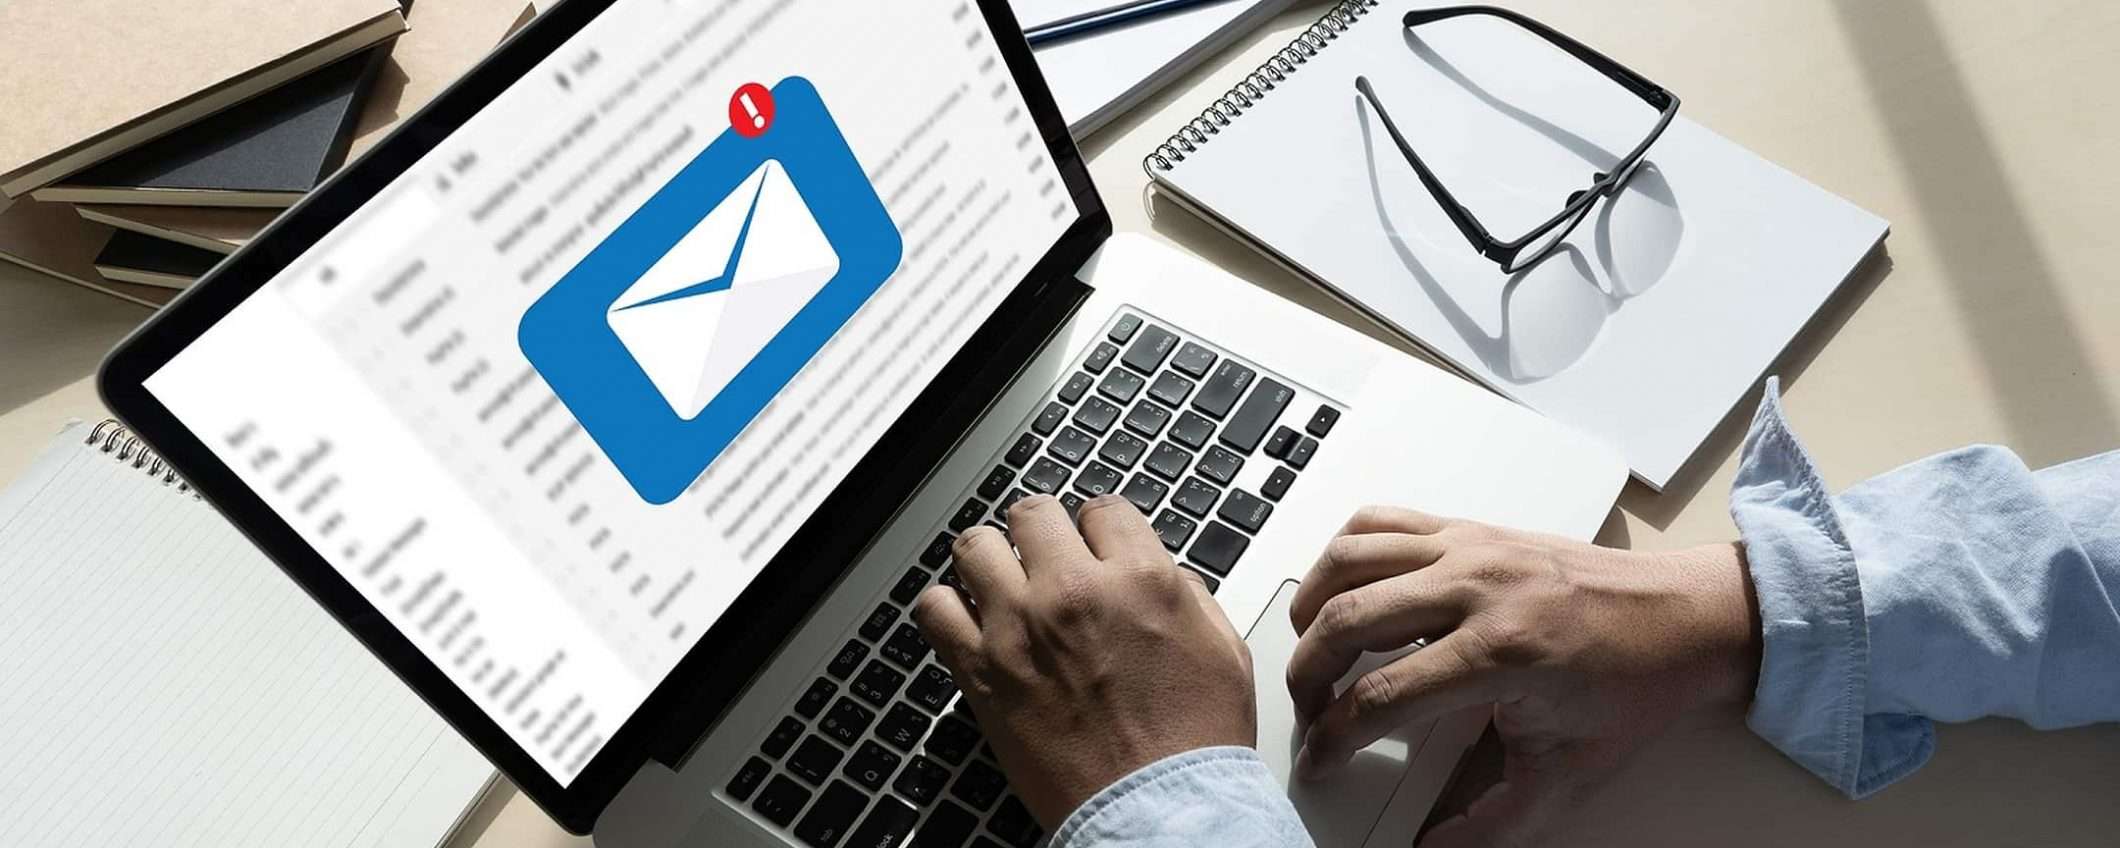 Udemy: corso ActiveCampaign per email marketing a solo 14 Euro!